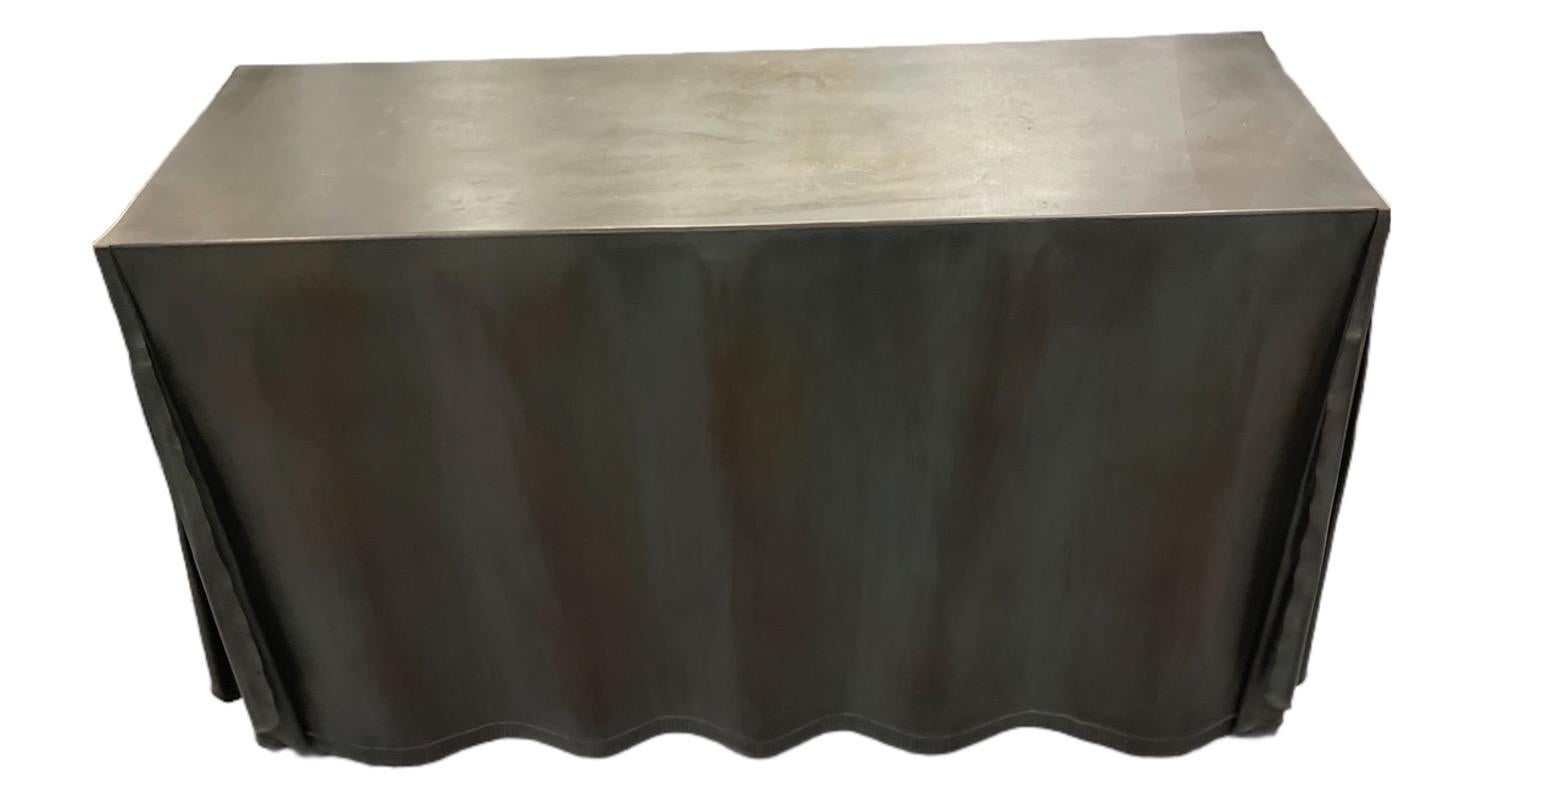 Table console en acier galvanisé avec une finition bronze drapée sur le dessus pour ressembler à du tissu. Il est étiqueté avec 